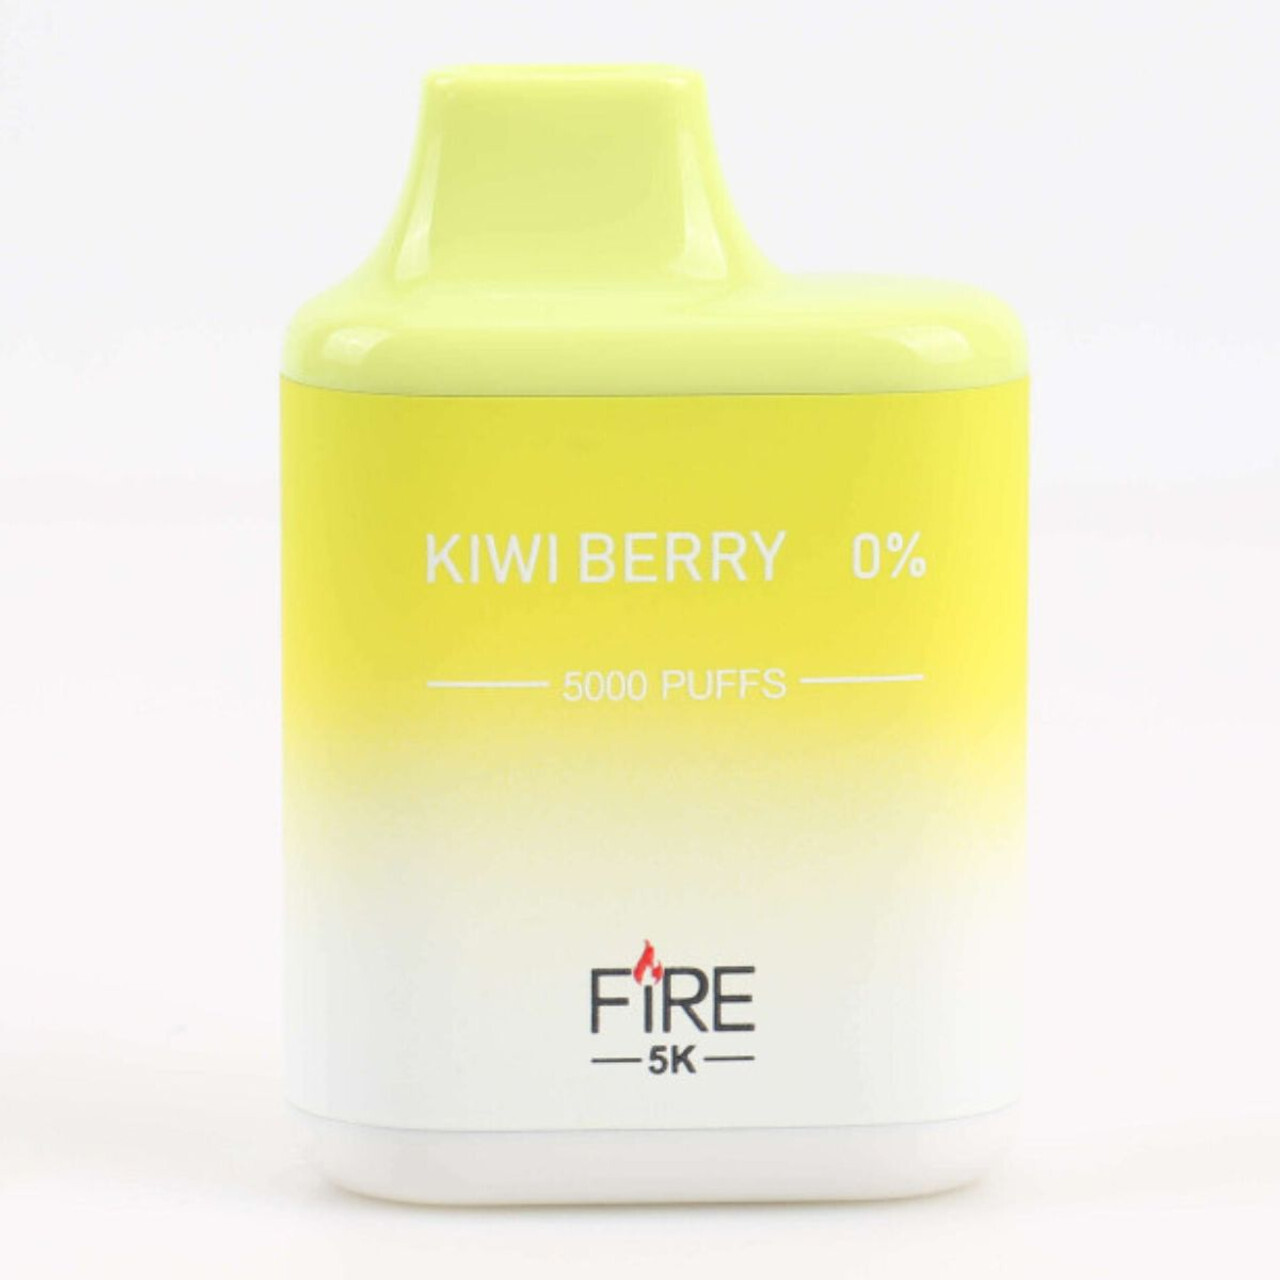 Fire 5k Kiwi Berry 0%